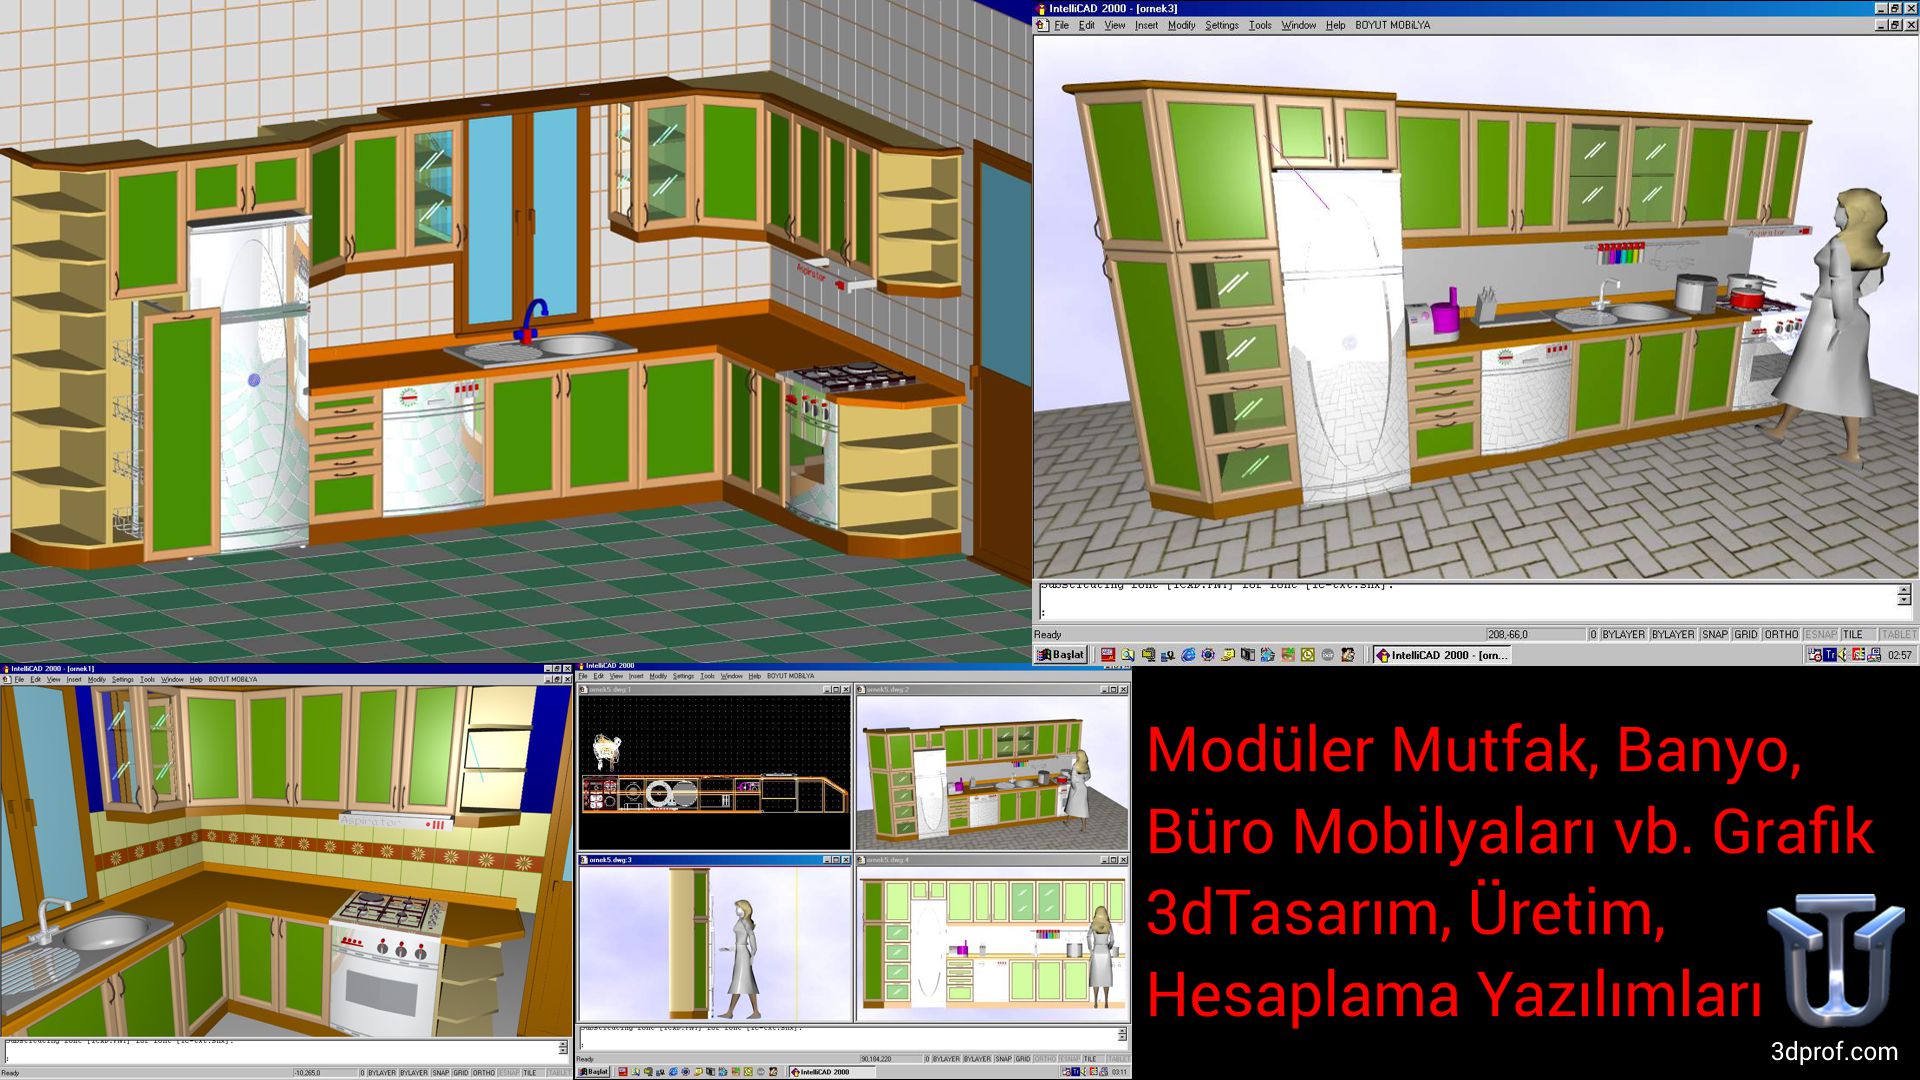 Modüler Mutfak, Banyo, Büro Mobilyaları vb. Grafik 3dTasarım, Üretim, Hesaplama Yazılımları